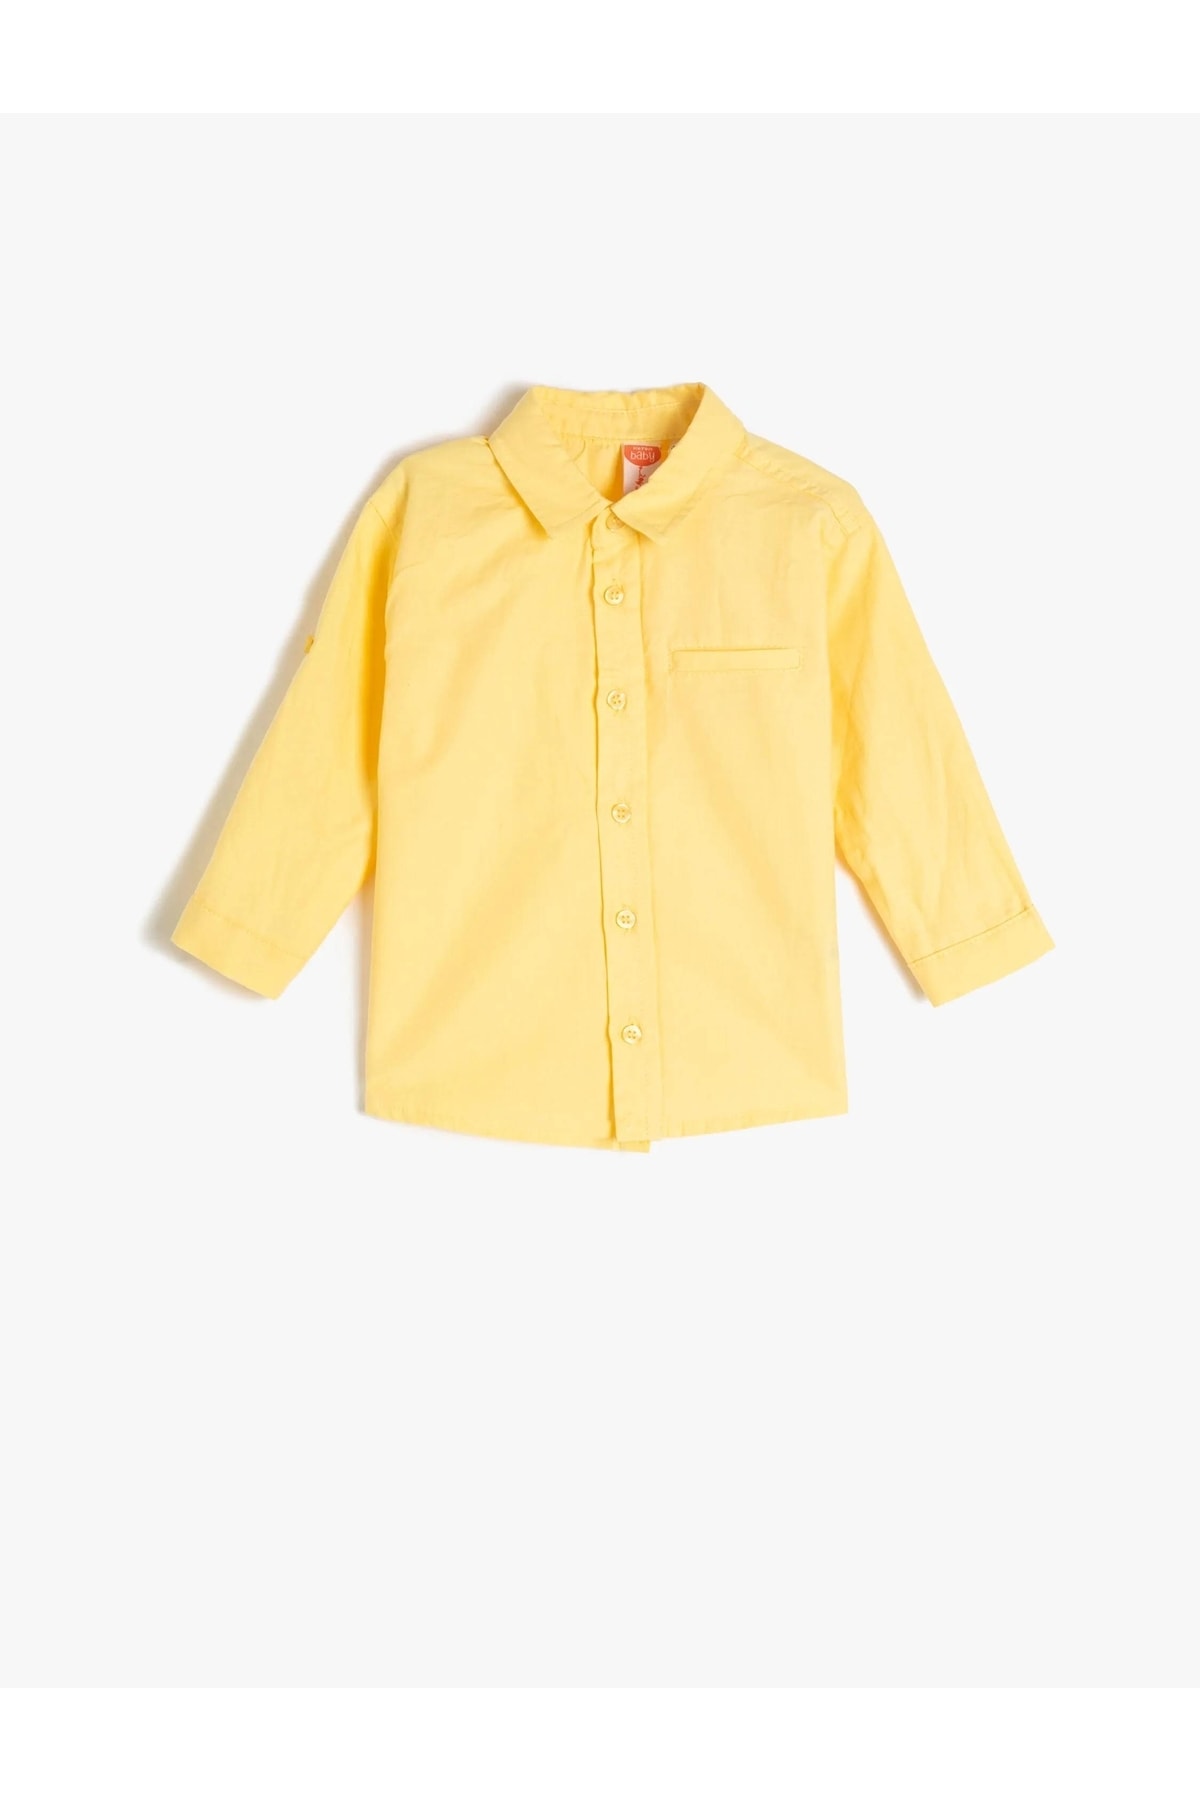 Koton 3smb60057tw Boys Shirts Yellow